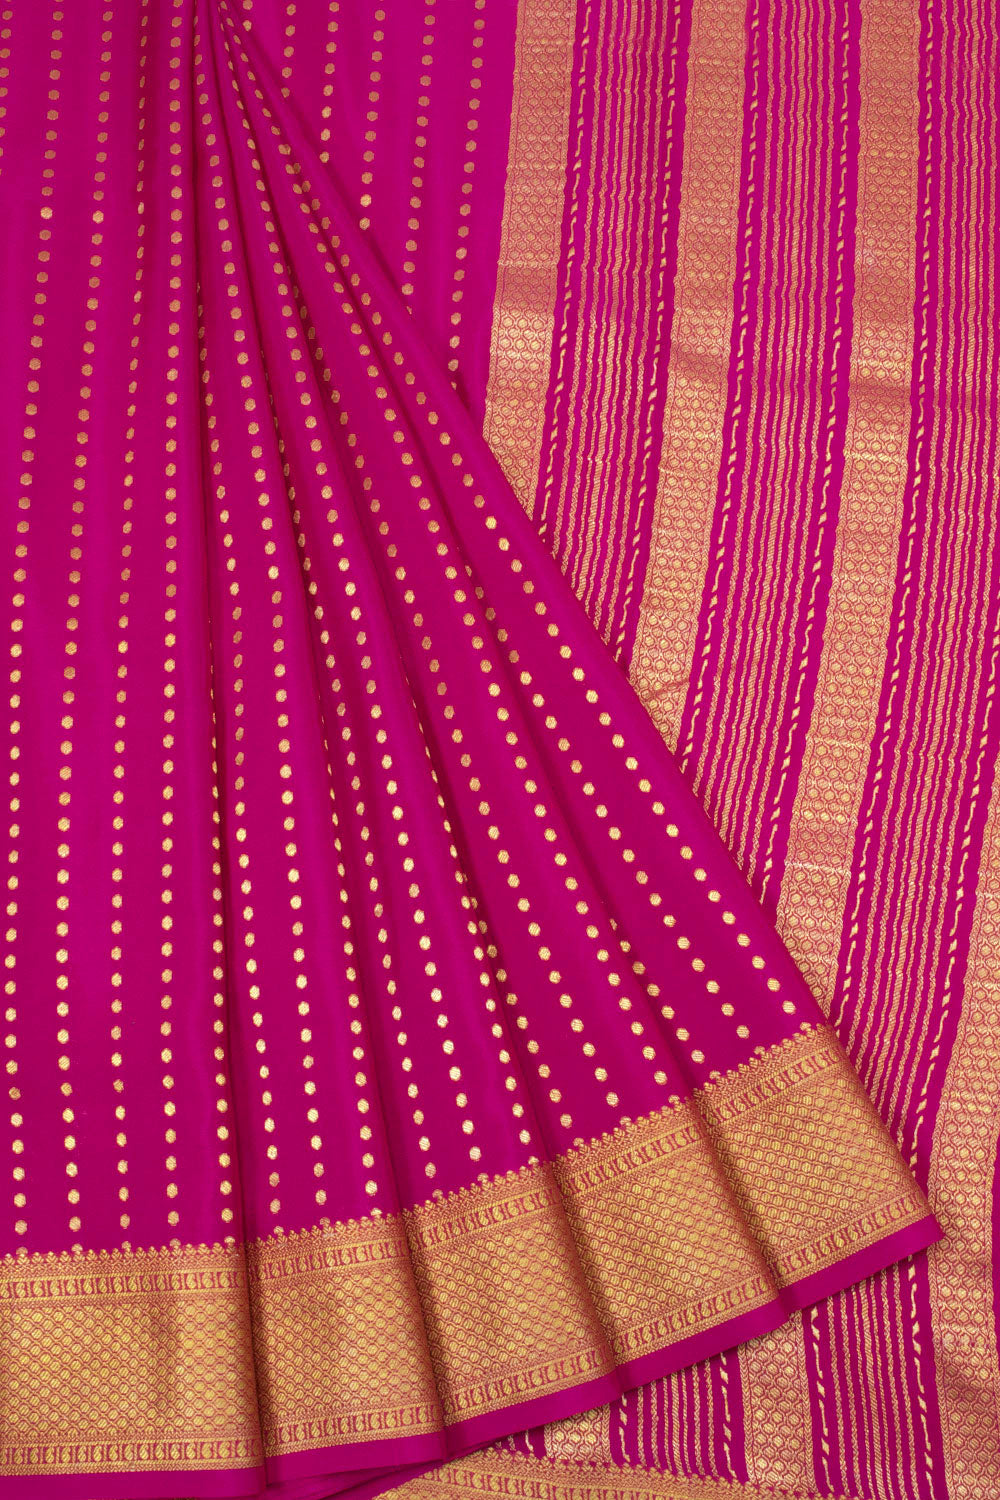 Rani Pink Mysore Crepe Silk Saree - 10064305